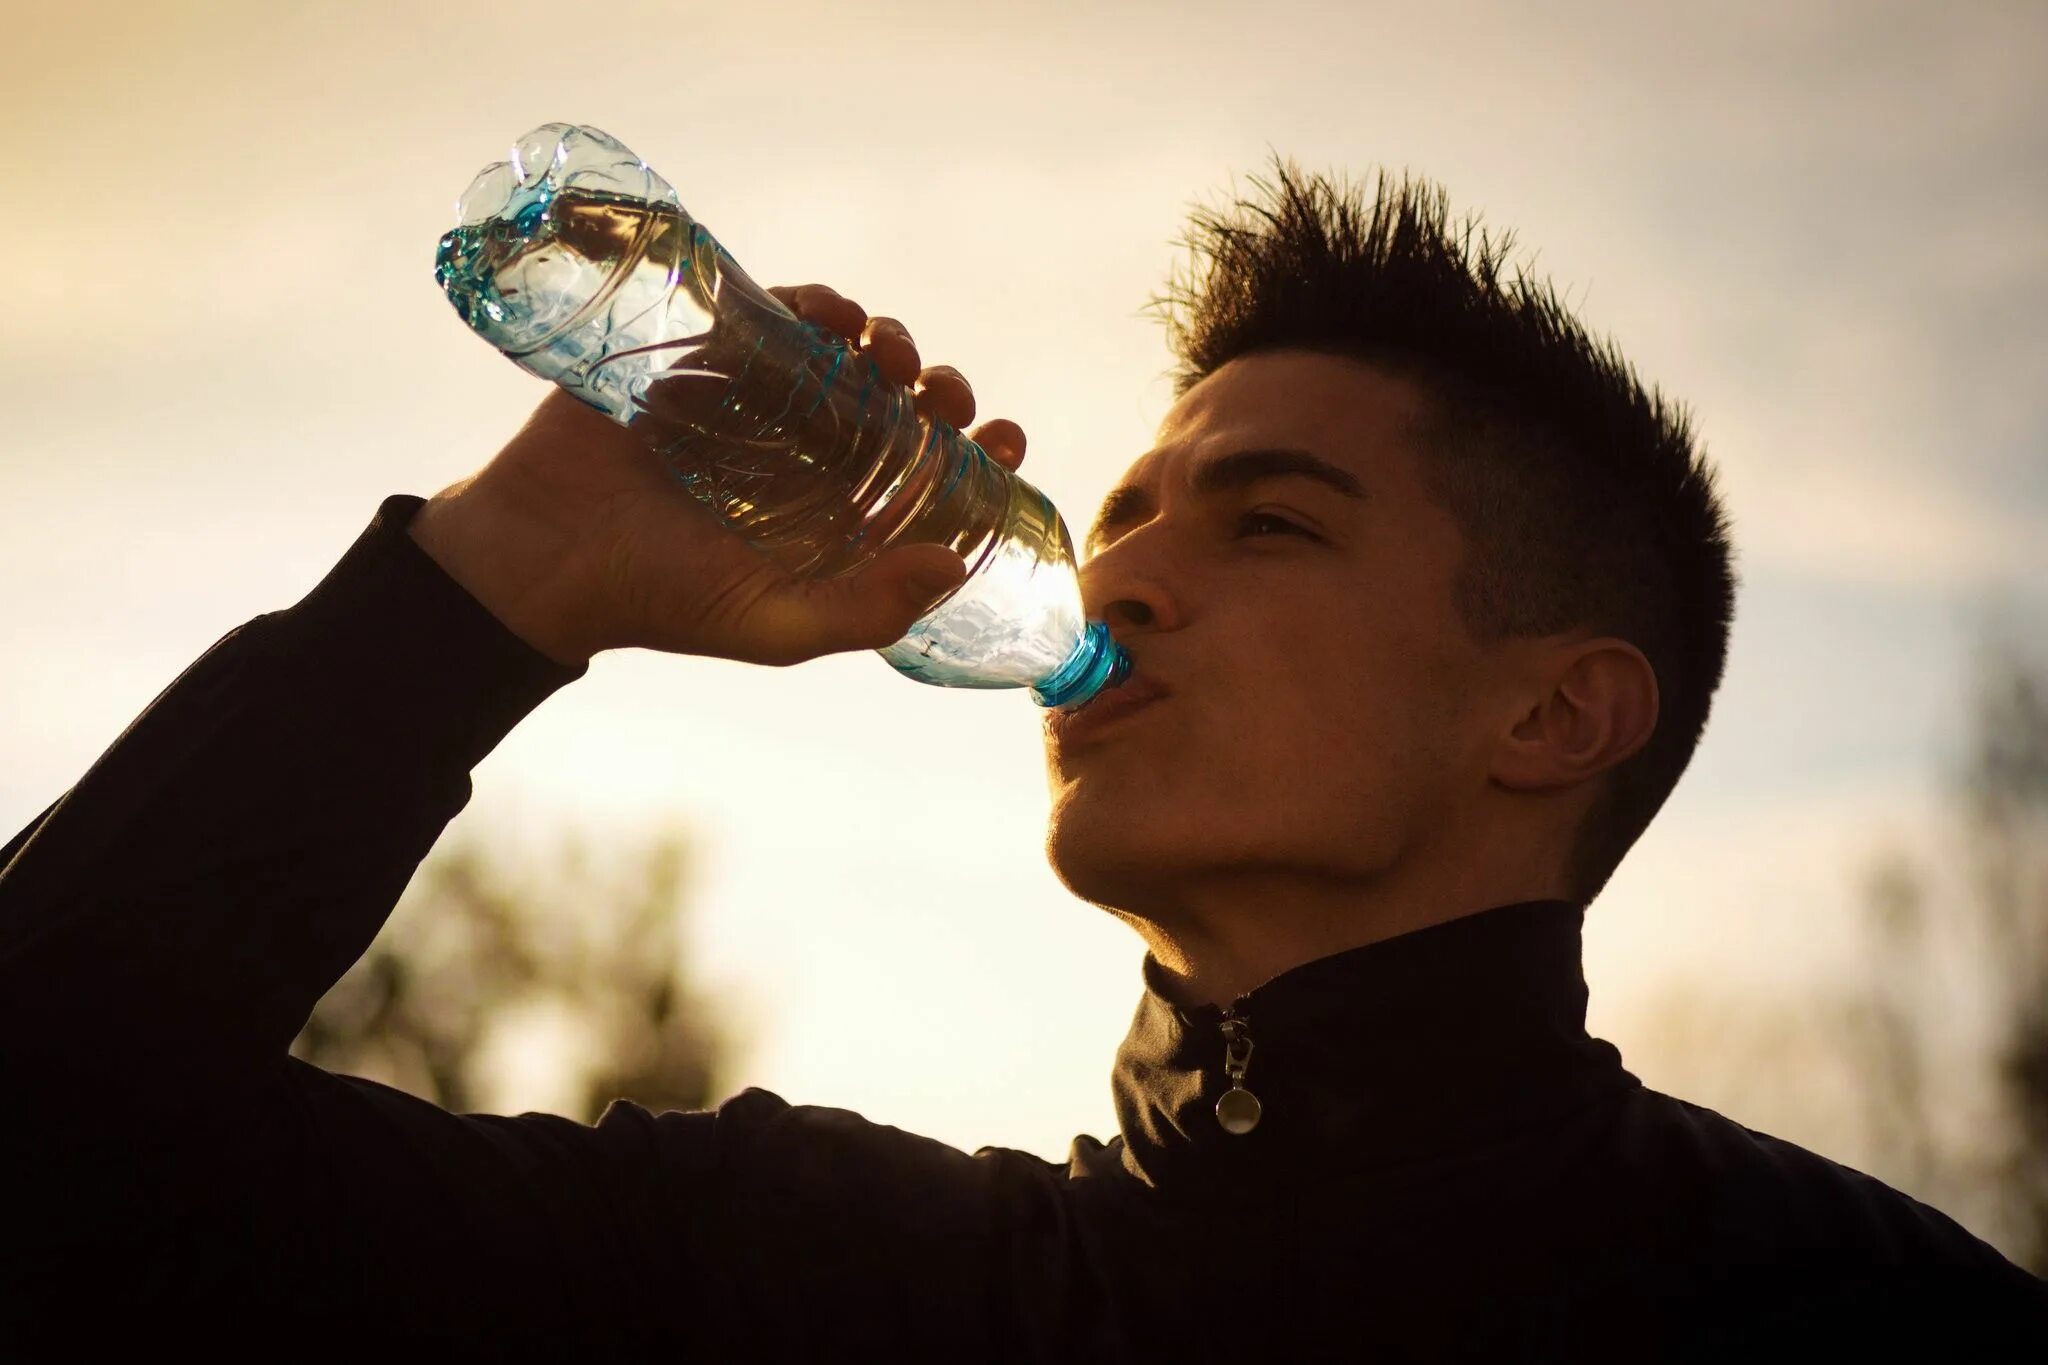 У друга пить воду. Обильное питье. Человек пьет воду. Человек пьет воду Эстетика. Вода и человек.